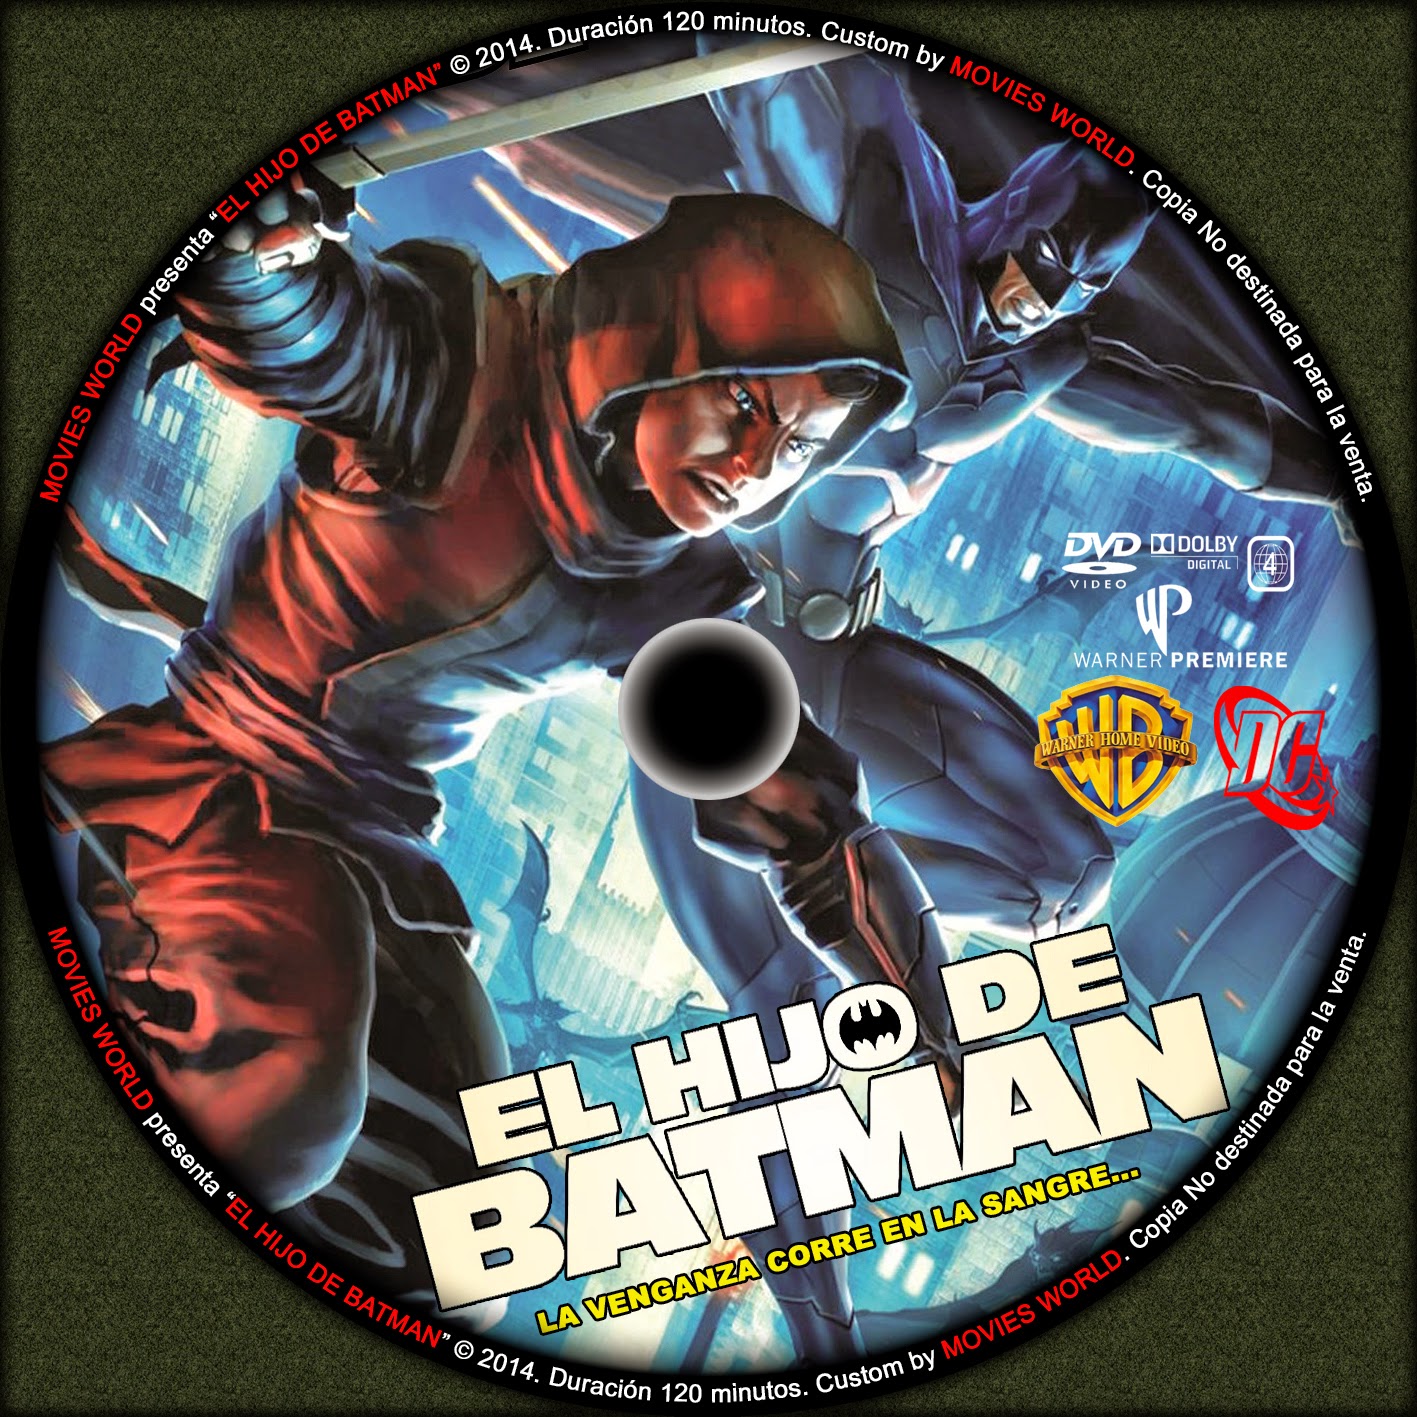 MOVIES WORLD: Son of Batman (EL HIJO DE BATMAN) DVD